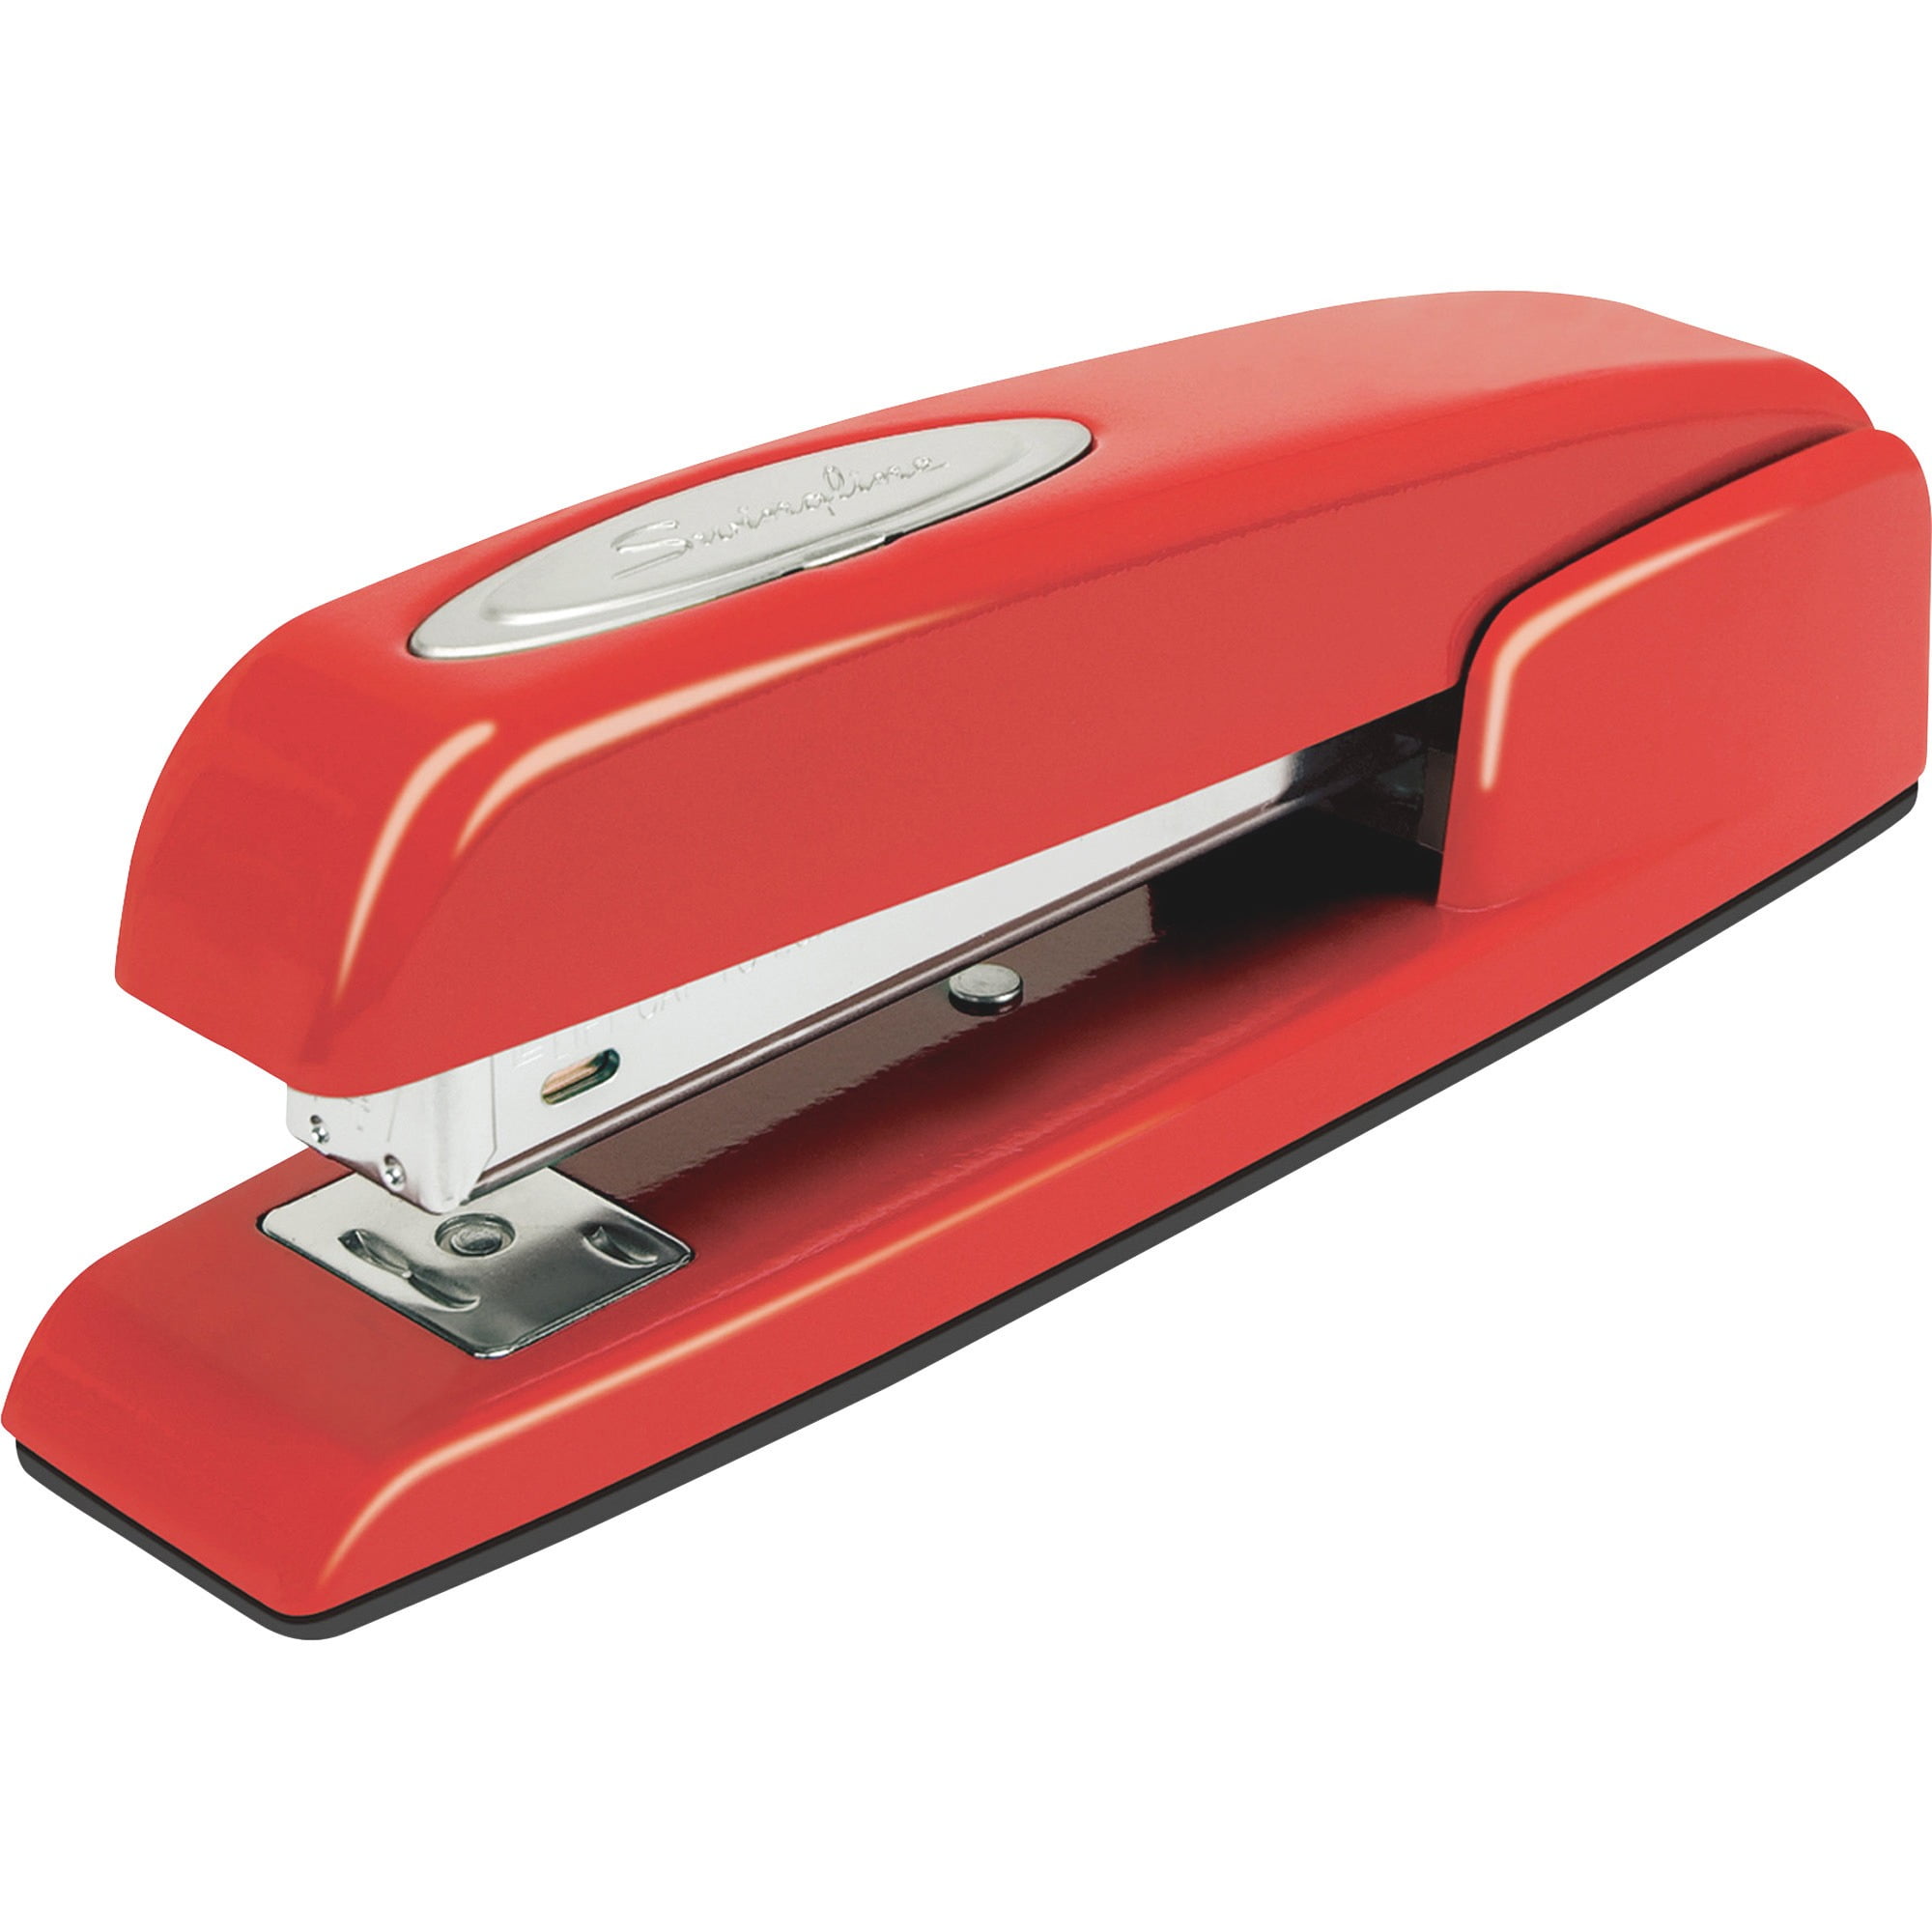 swingline stapler